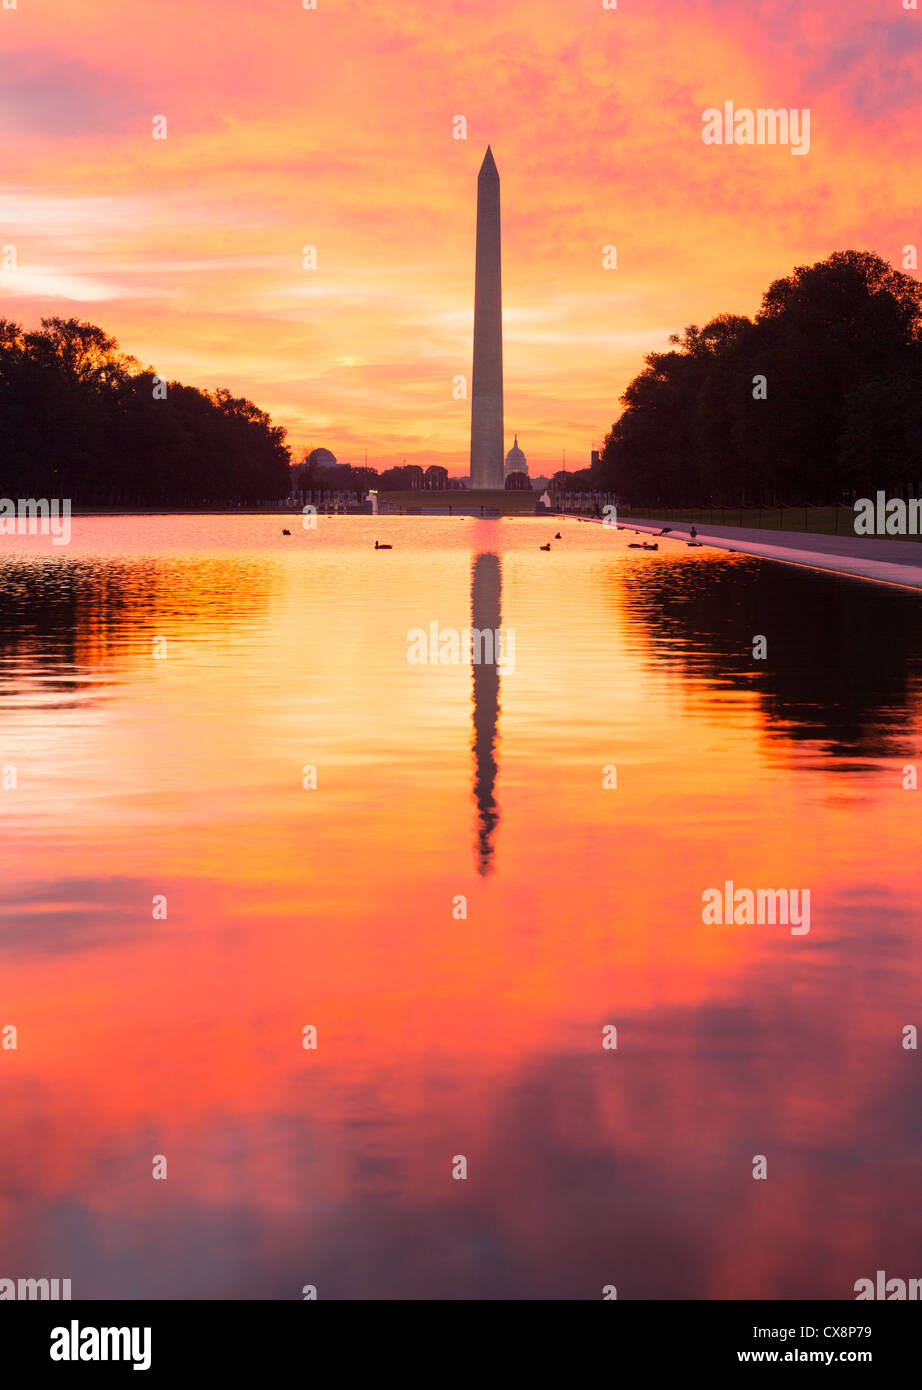 Rosso brillante e orange sunrise all'alba riflette il Monumento a Washington nella nuova piscina riflettente con red sky Foto Stock